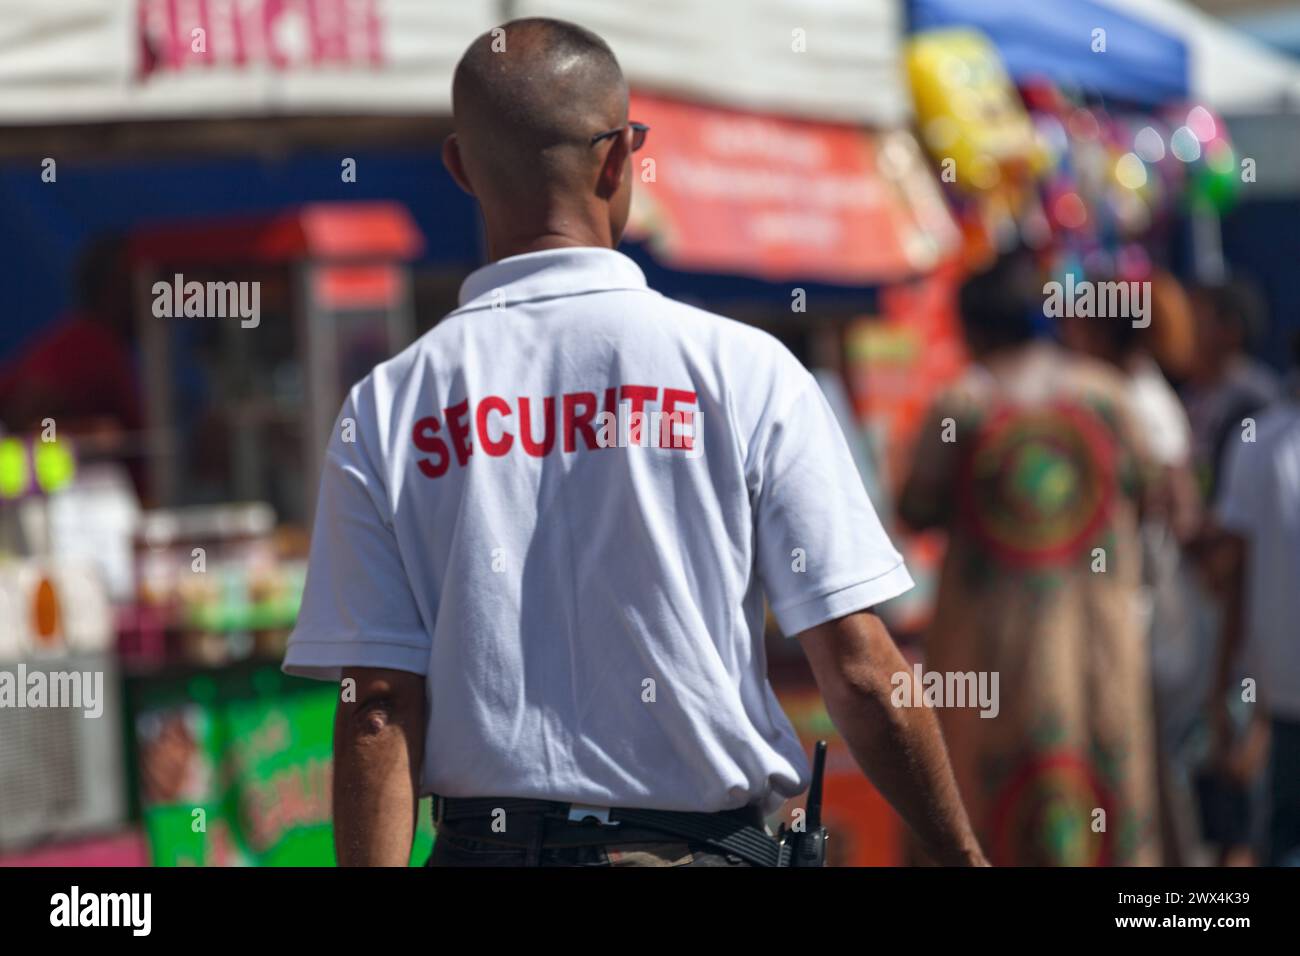 Saint Denis, Réunion - 08. August 2016: Sicherheitspersonal kontrolliert die Menge während des August-Flohmarktes in Saint Denis, Insel Réunion. Stockfoto